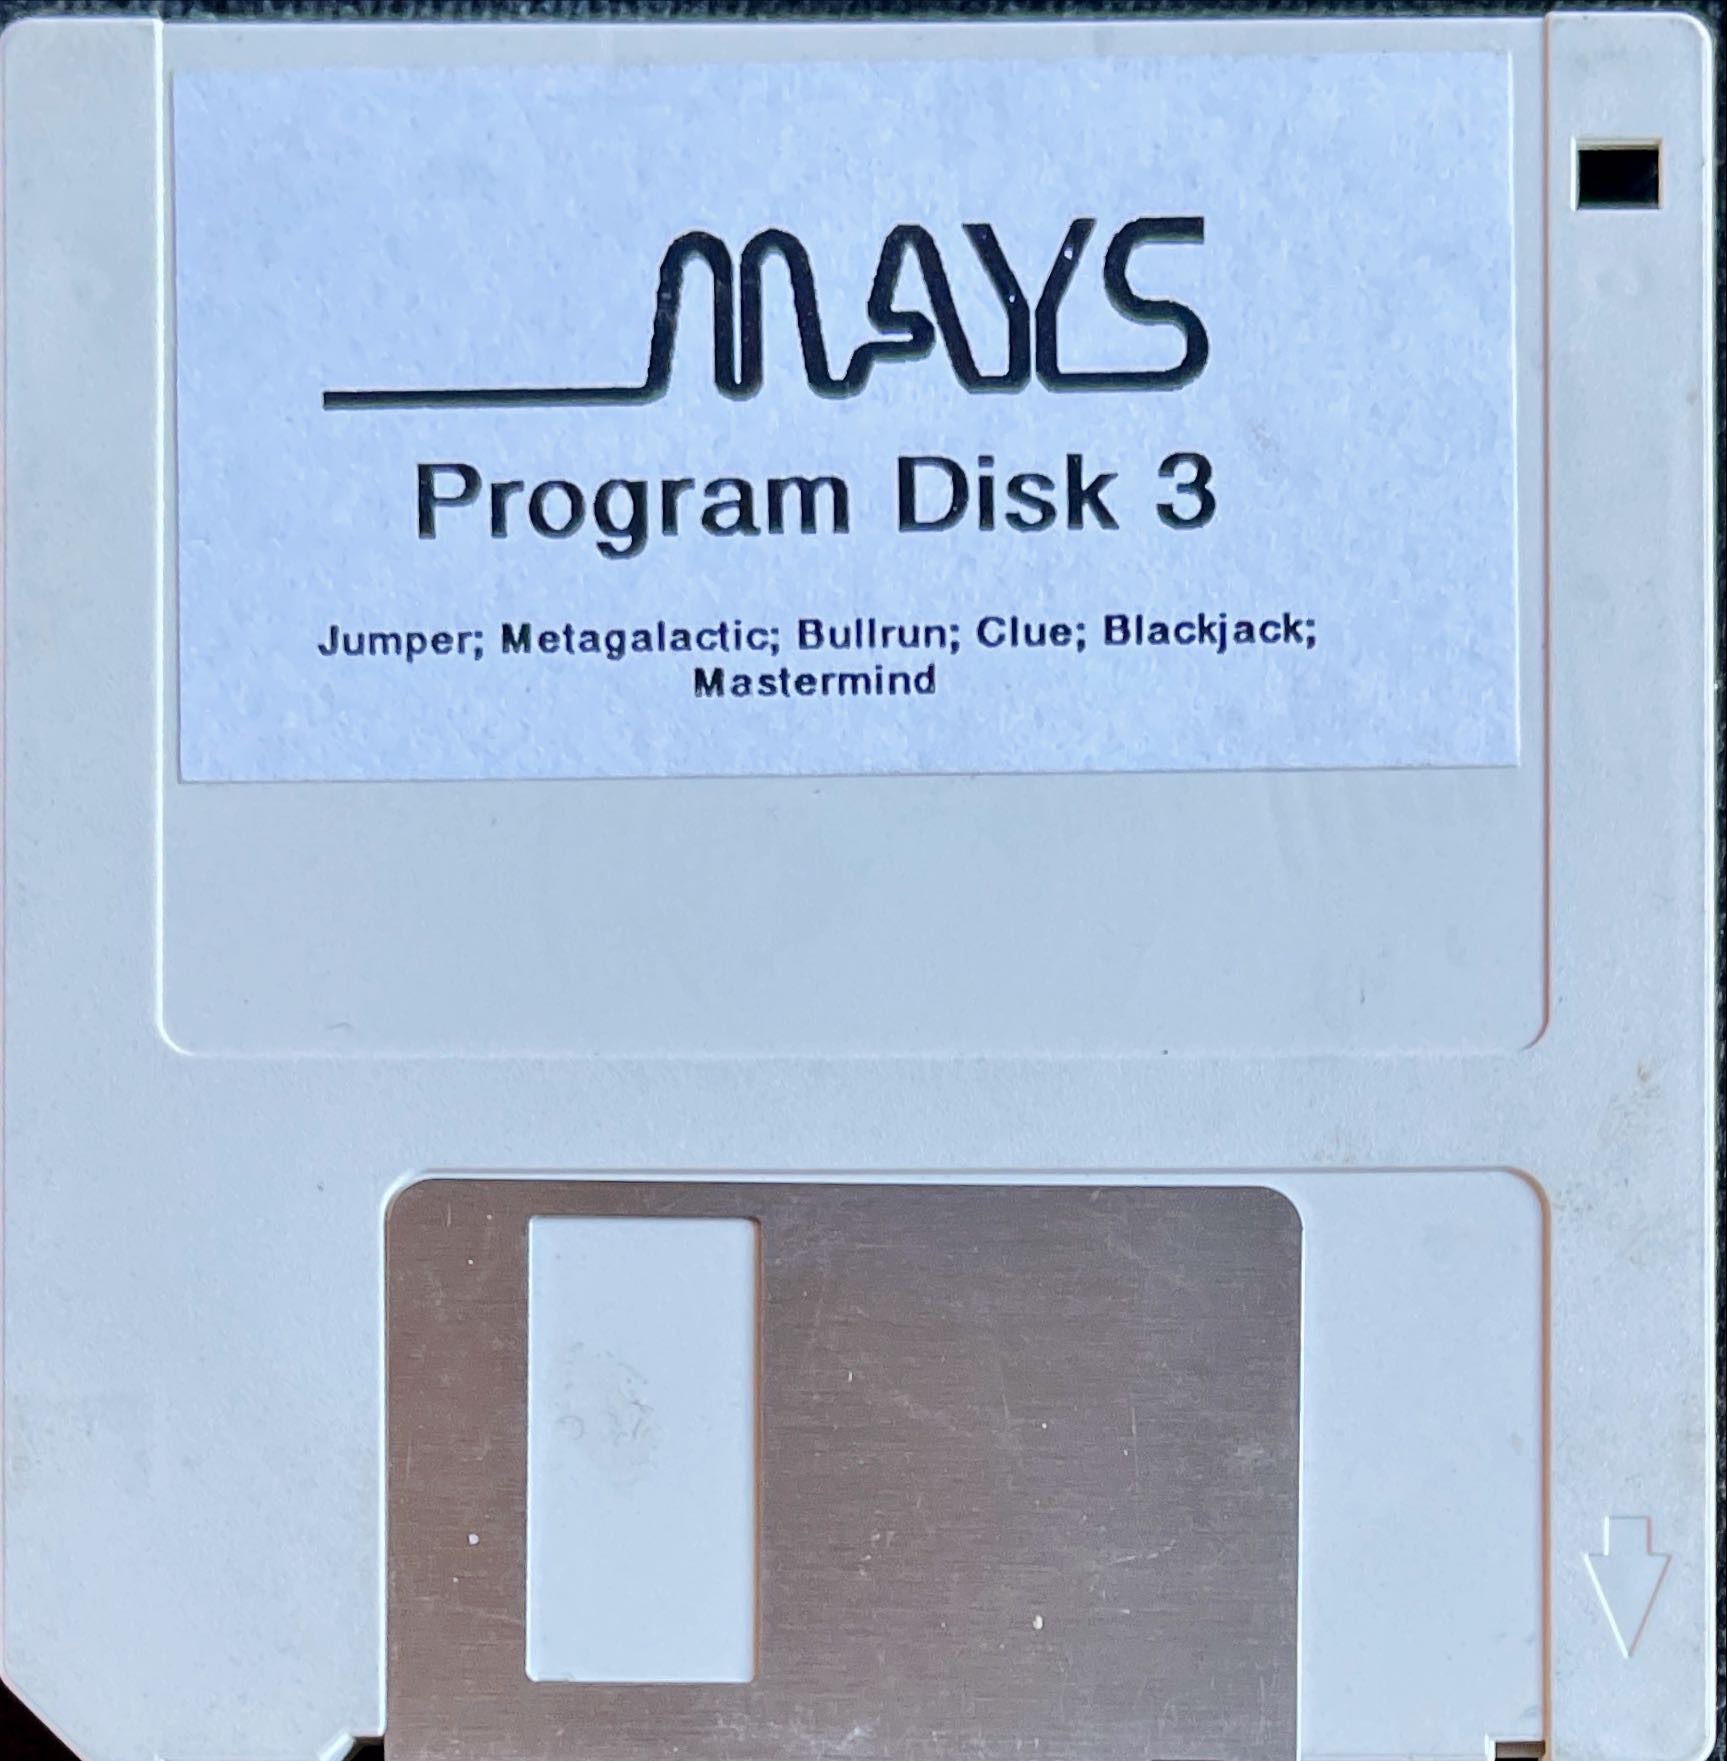 Program Disk 3